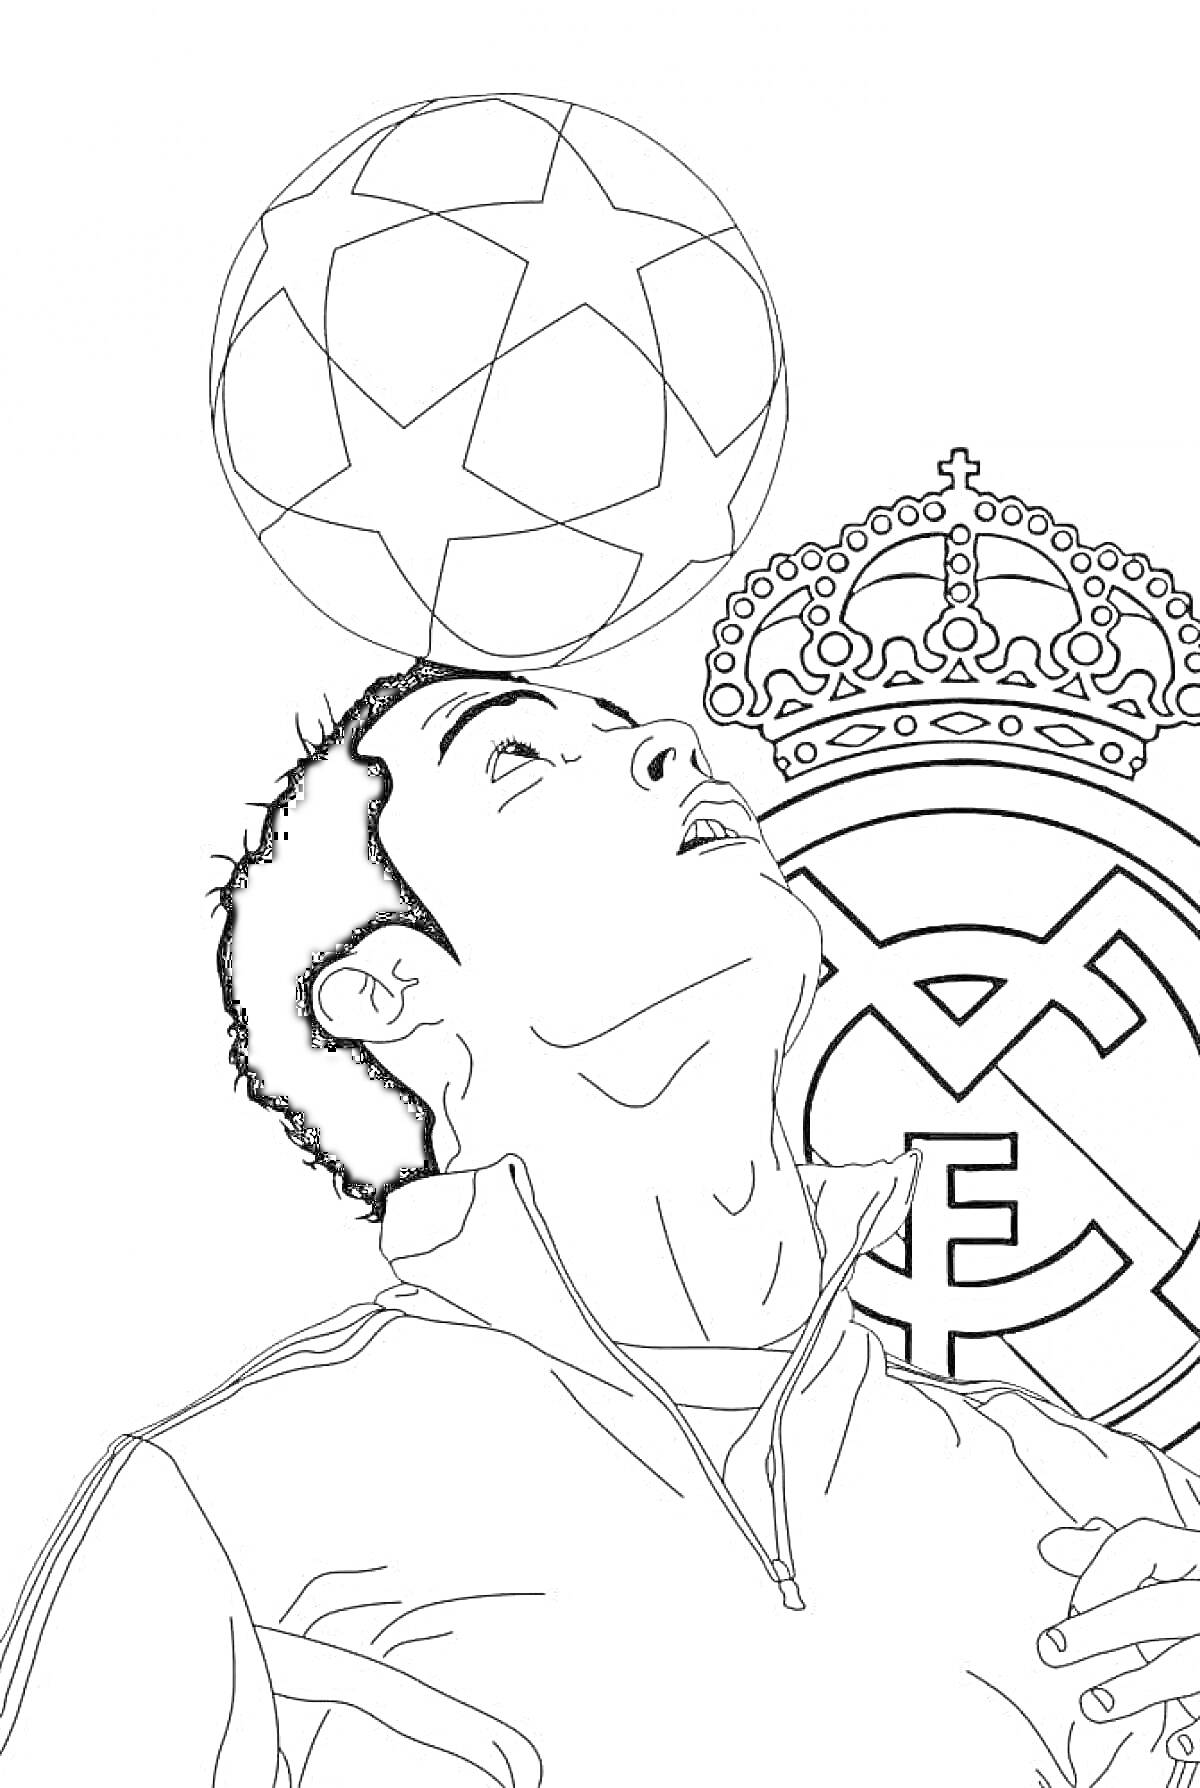 Раскраска Футболист с мячом на голове и эмблема Реал Мадрид